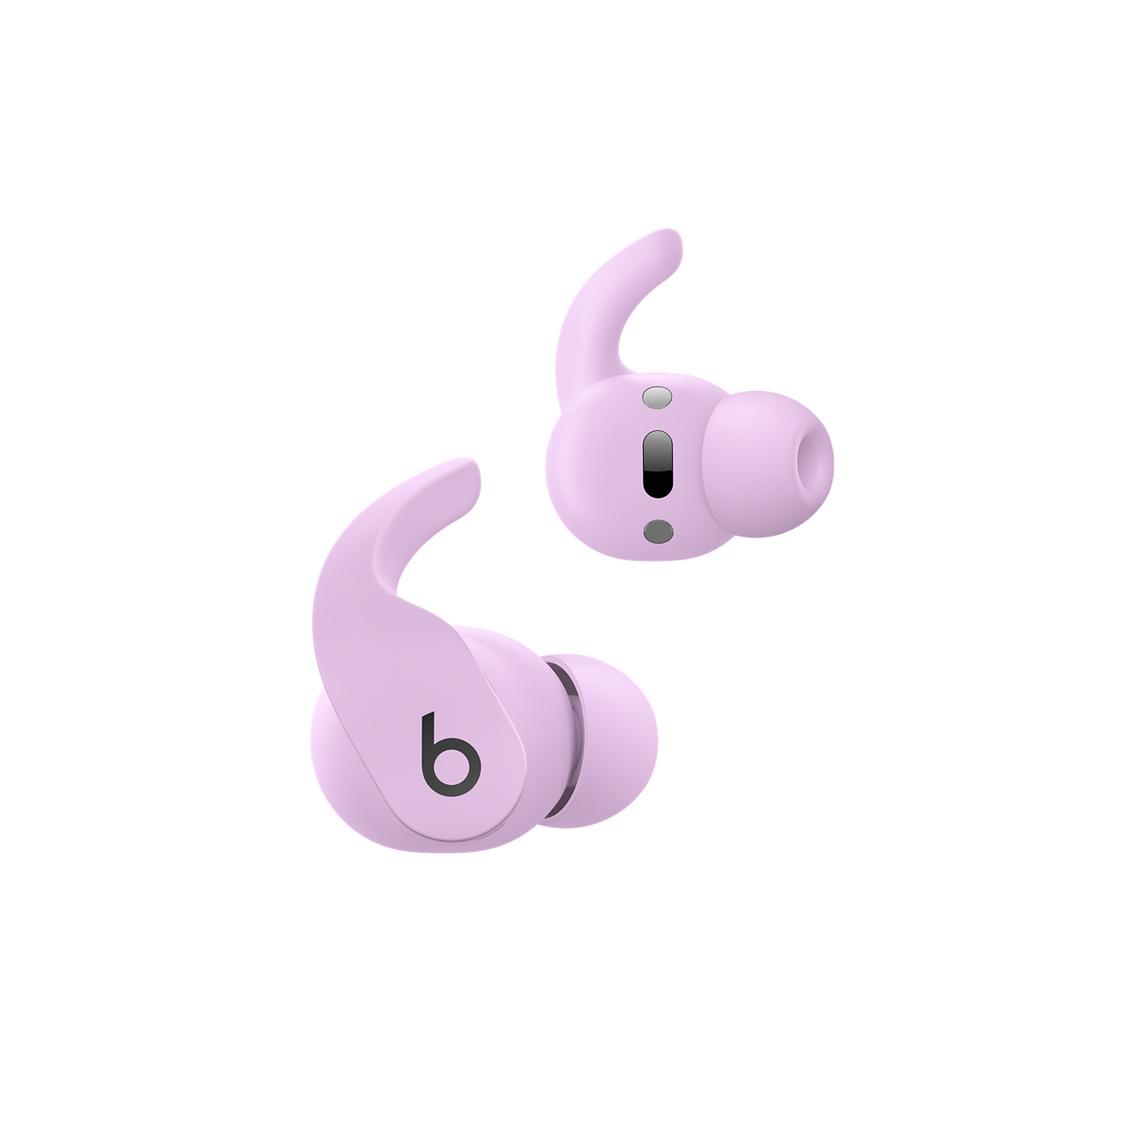 Bezprzewodowe słuchawki douszne Beats Fit Pro w kolorze antracytowego fioletu z widocznymi nausznymi elementami sterującymi, które służą do obsługi połączeń i sterowania odtwarzaniem muzyki. 